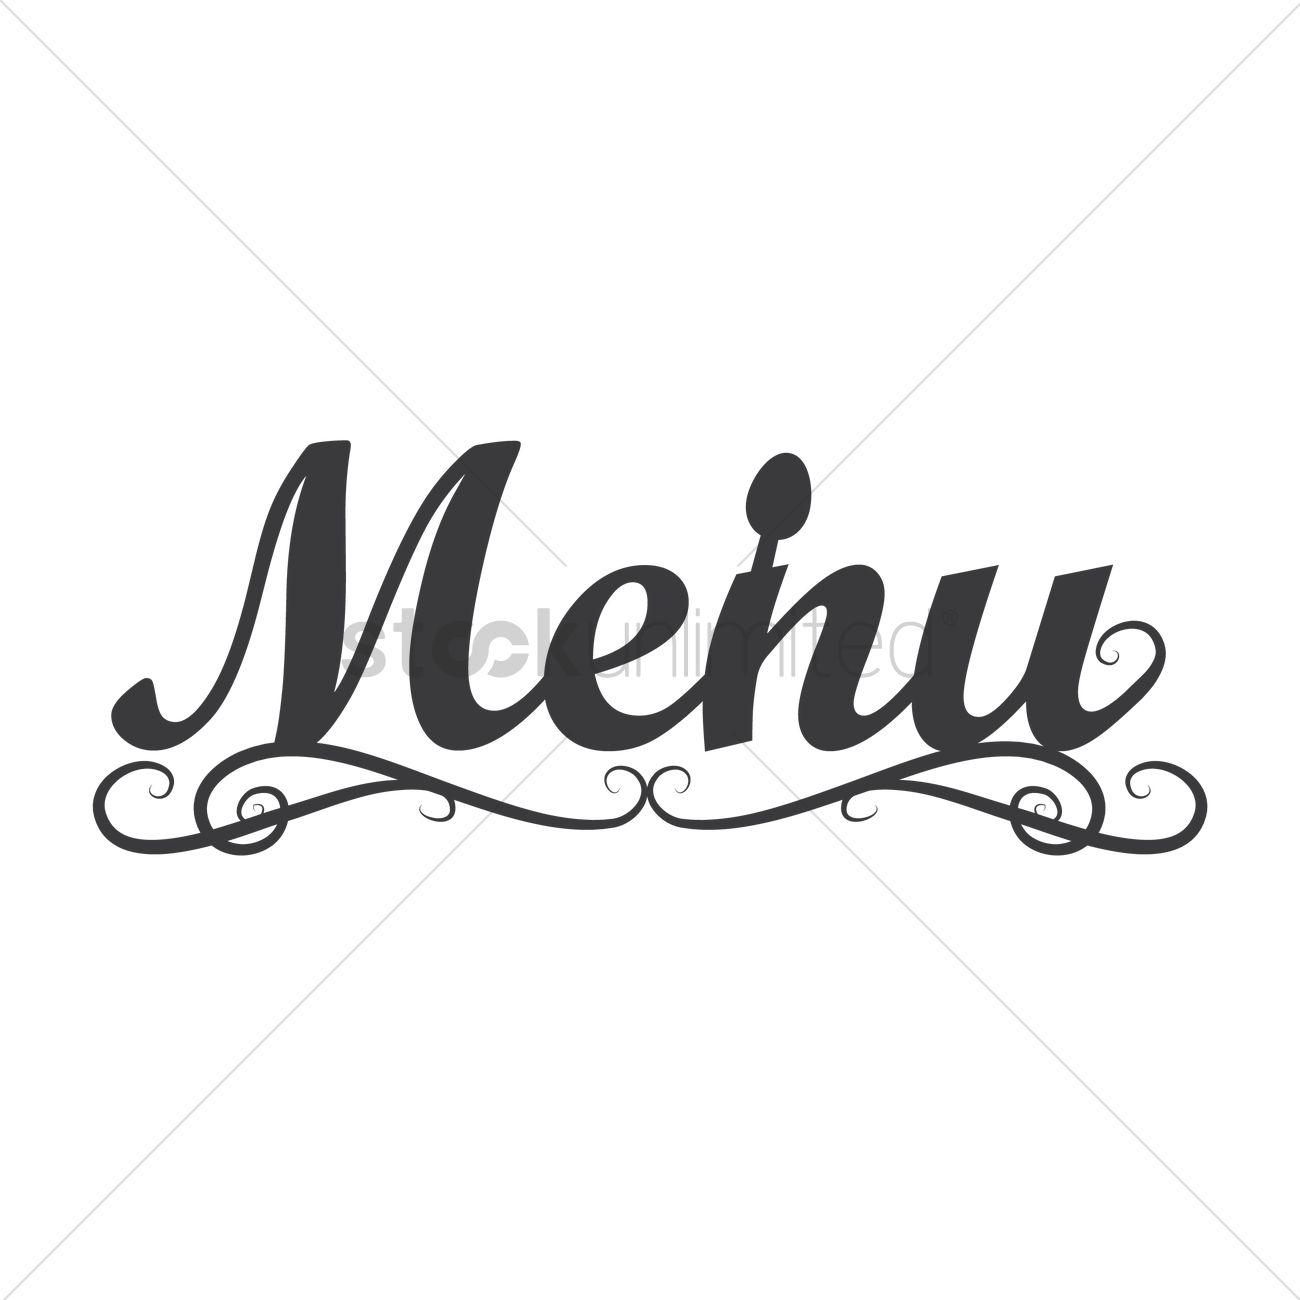 Menu Logo - Menu logo icon Vector Image - 1710133 | StockUnlimited